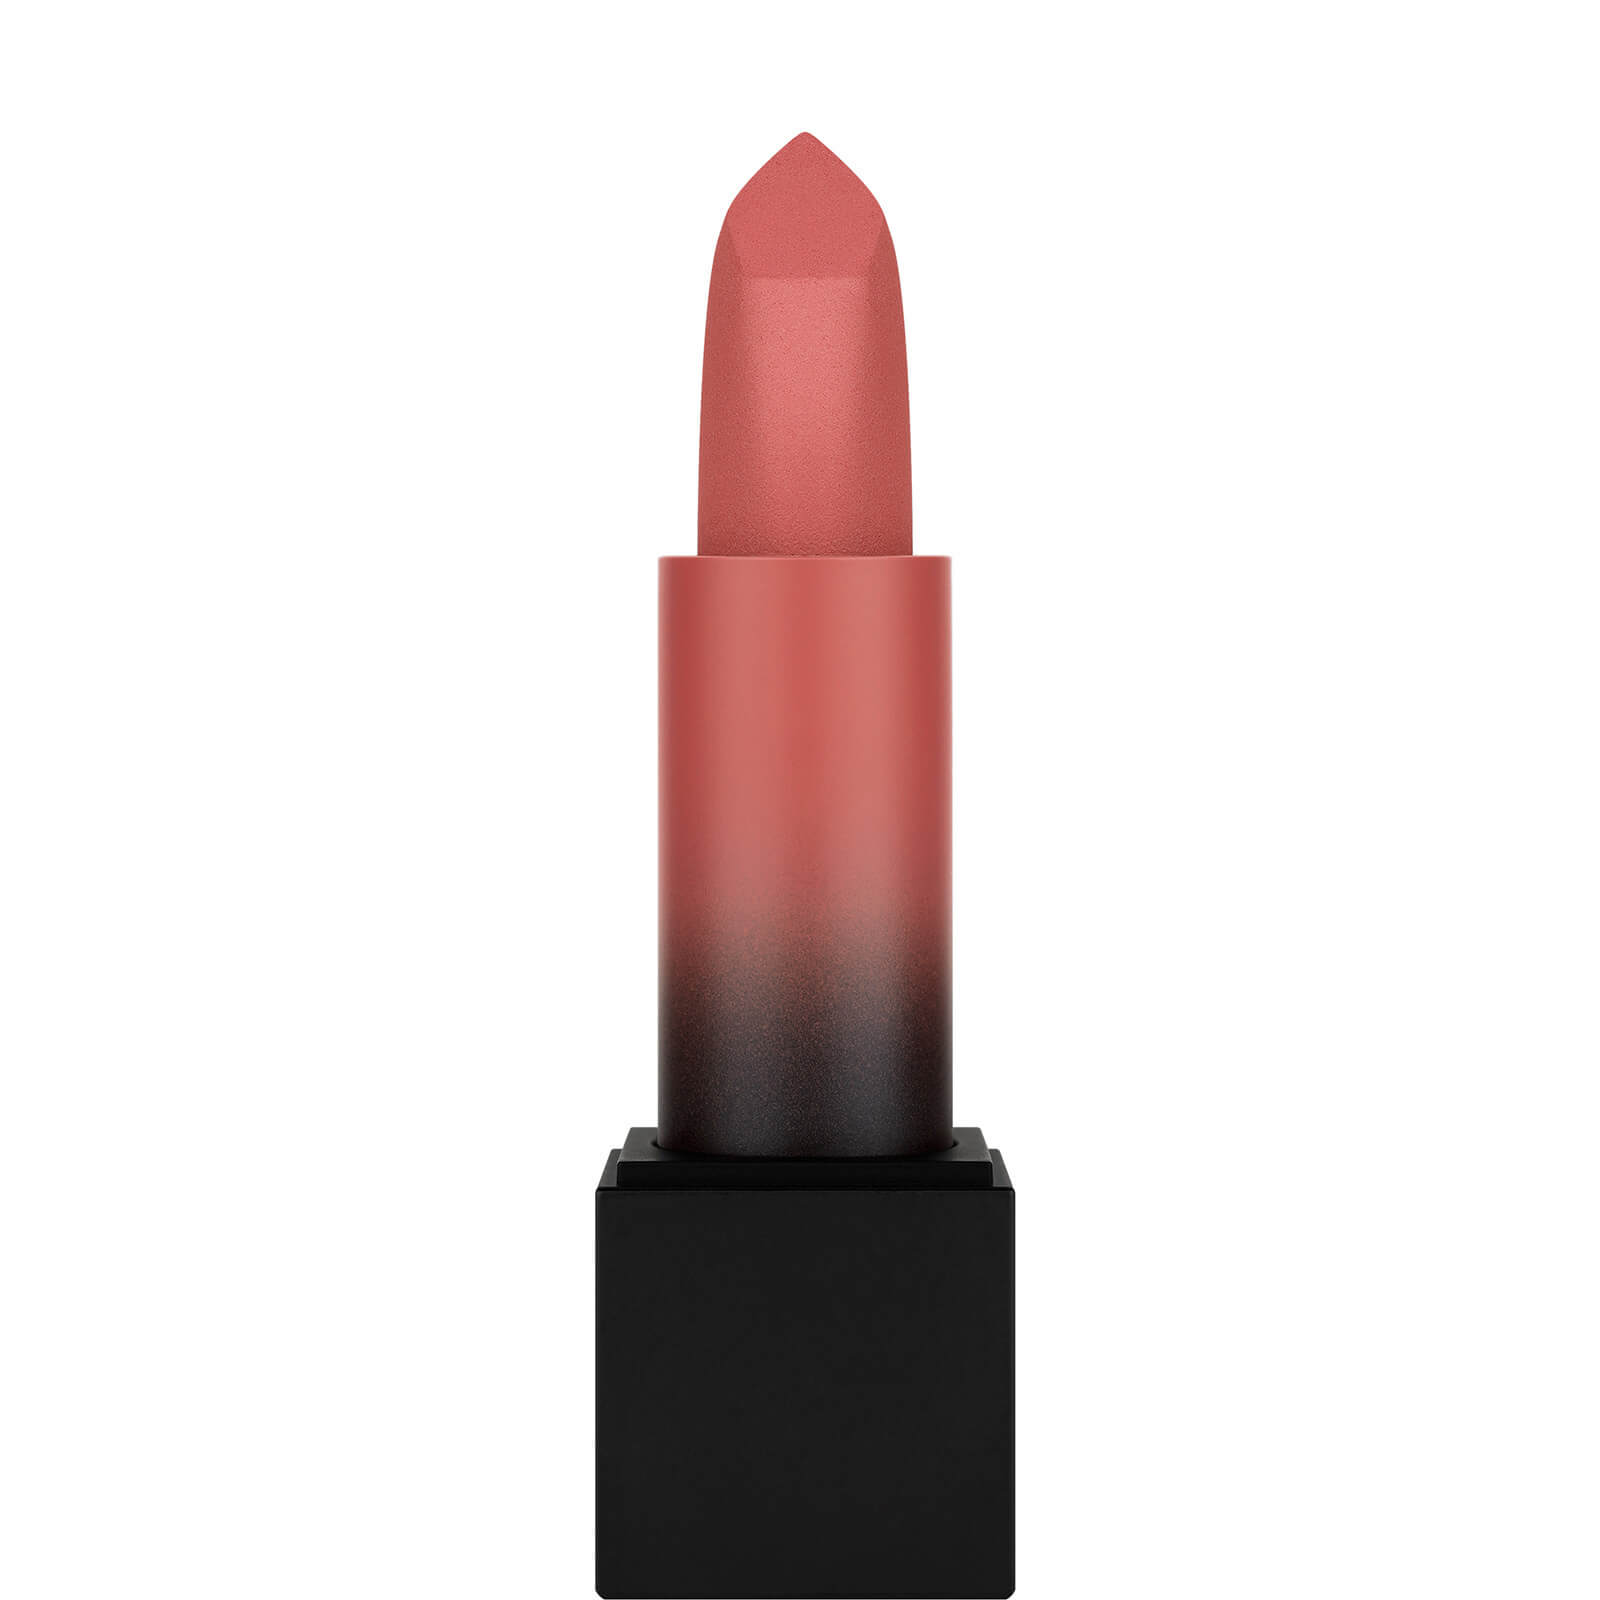 Photos - Lipstick & Lip Gloss Huda Beauty Power Bullet Matte Lipstick - Rendez-Vous 